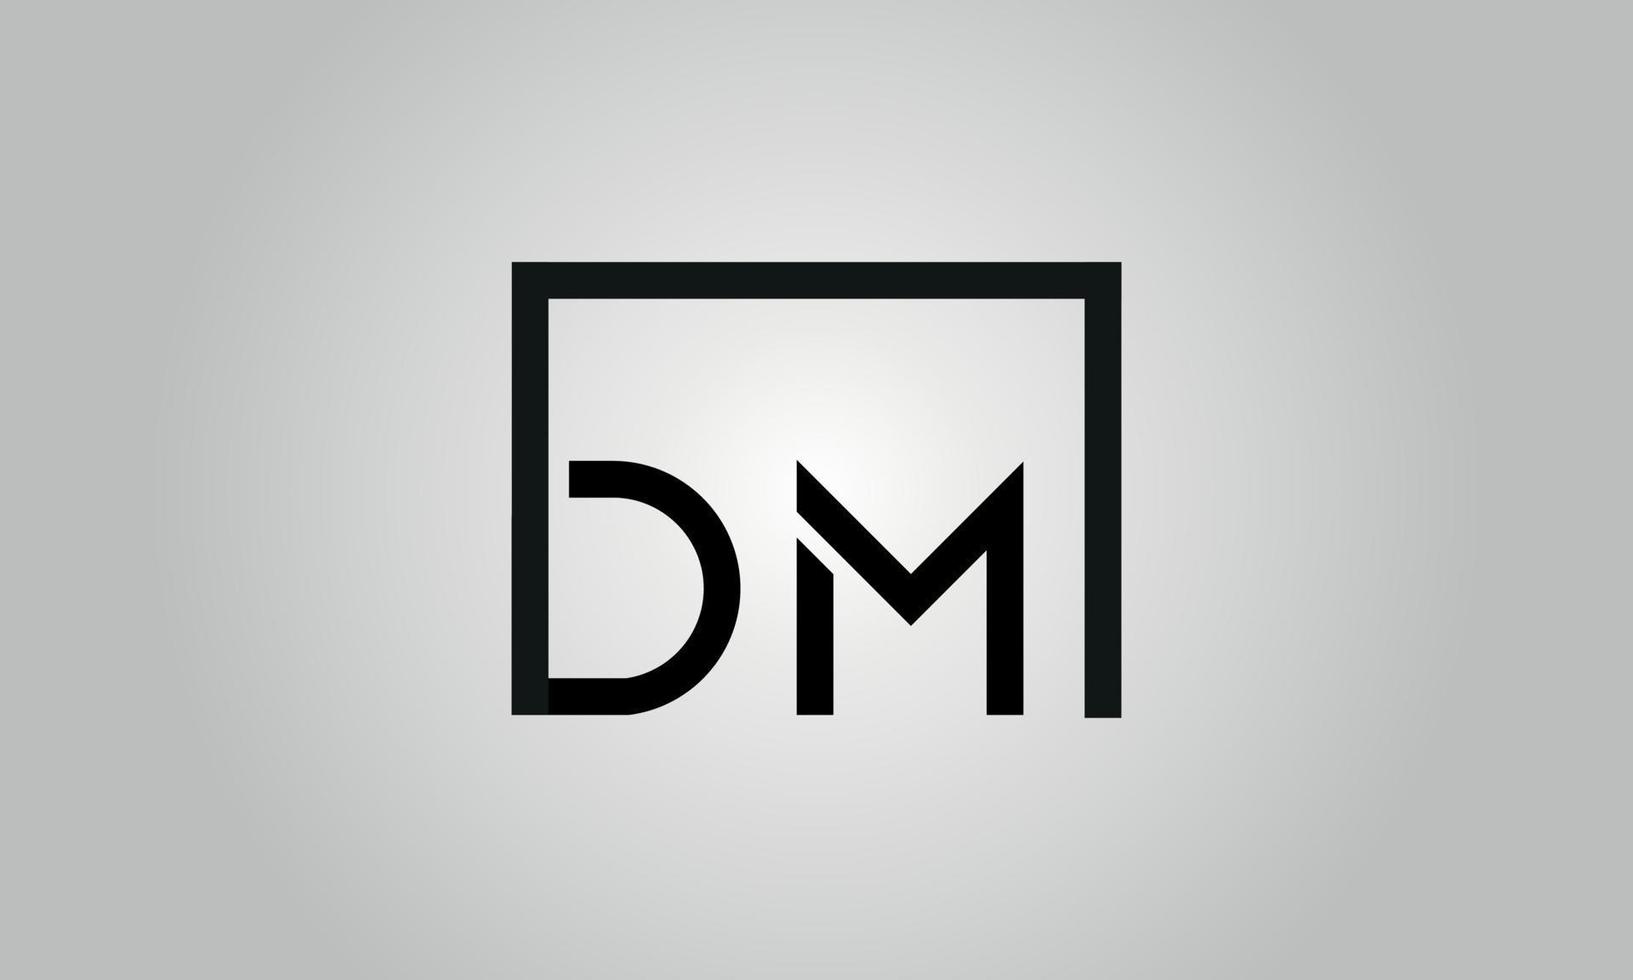 création de logo lettre dm. logo dm avec forme carrée dans le modèle de vecteur gratuit de vecteur de couleurs noires.